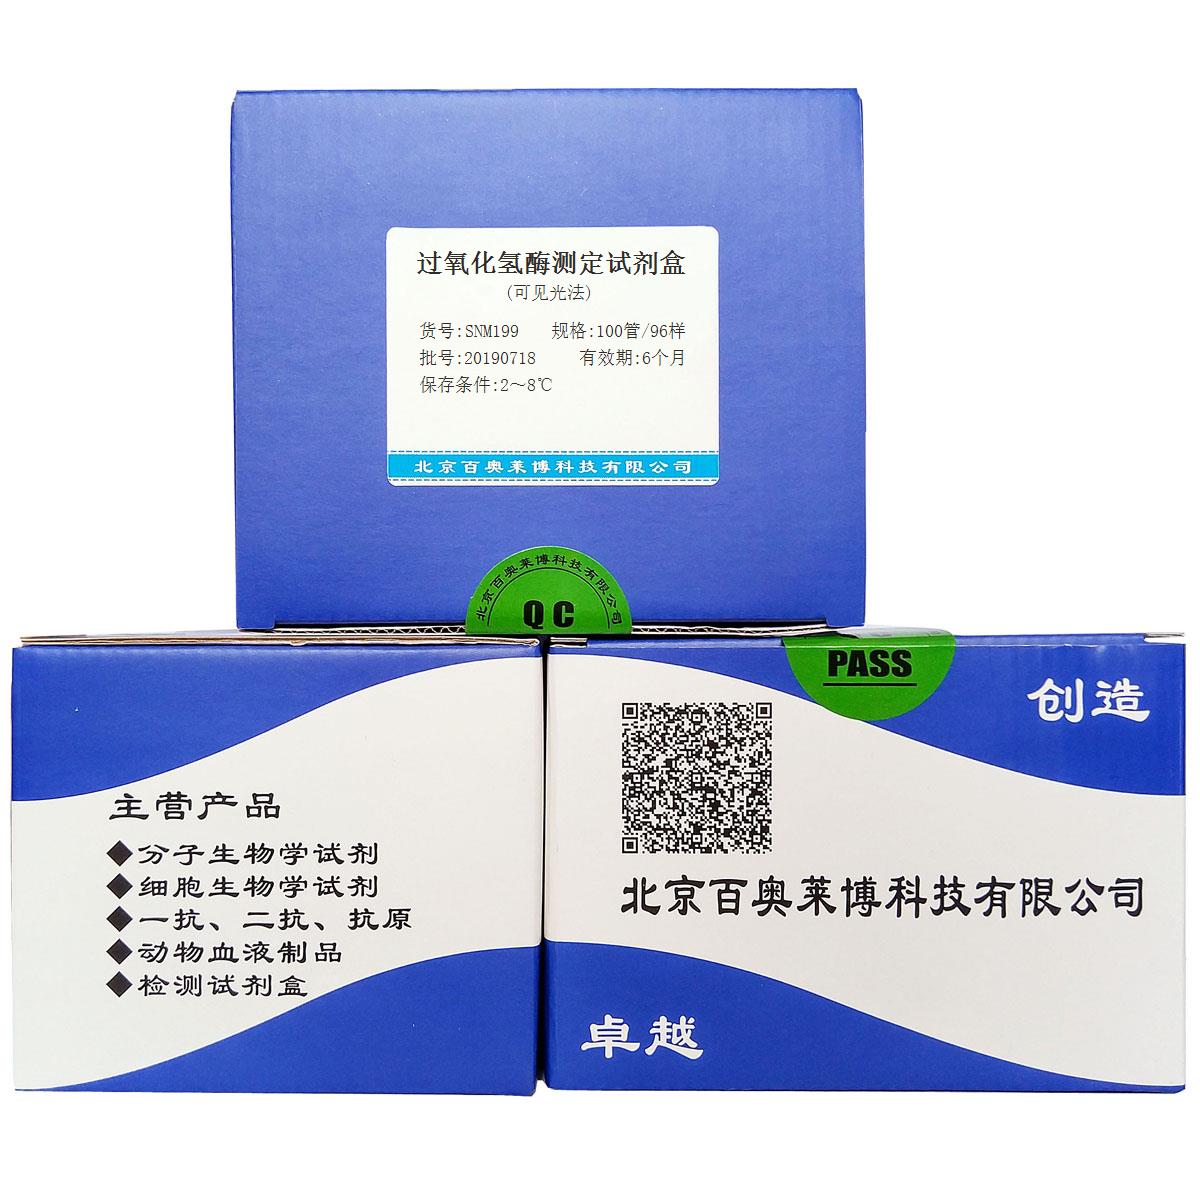 过氧化氢酶测定试剂盒(可见光法)北京供应商